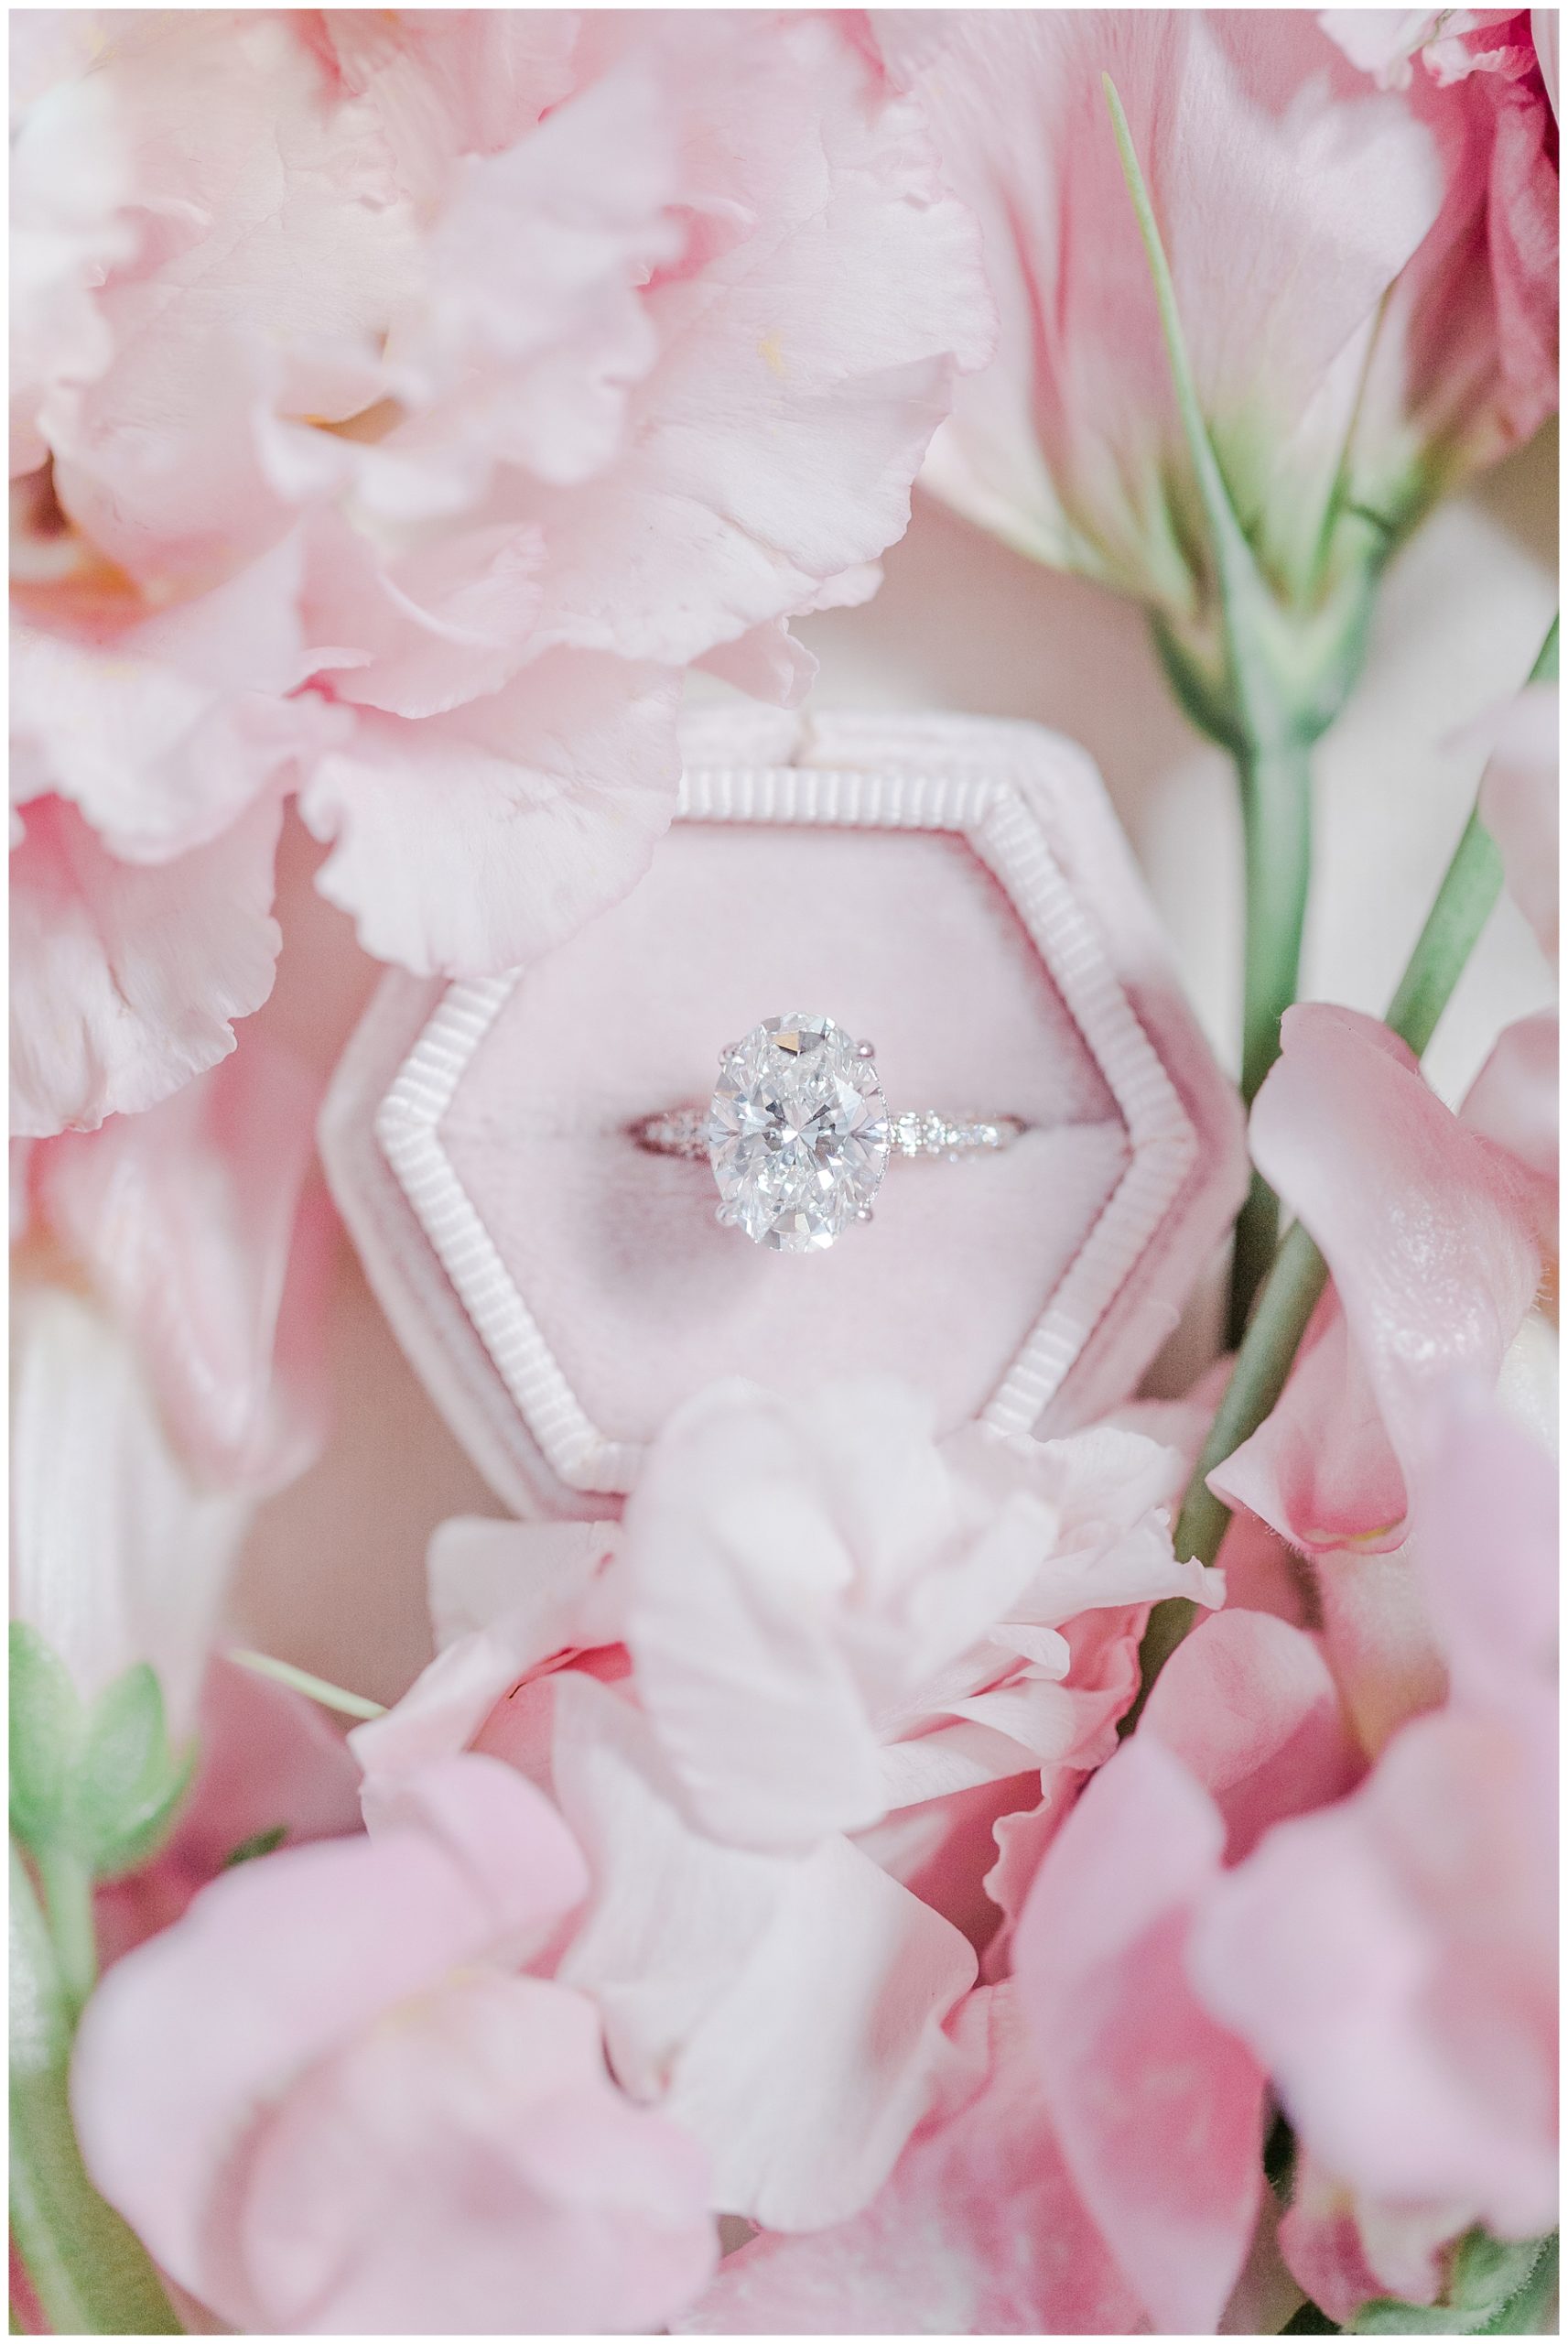 wedding ring in pink ring box